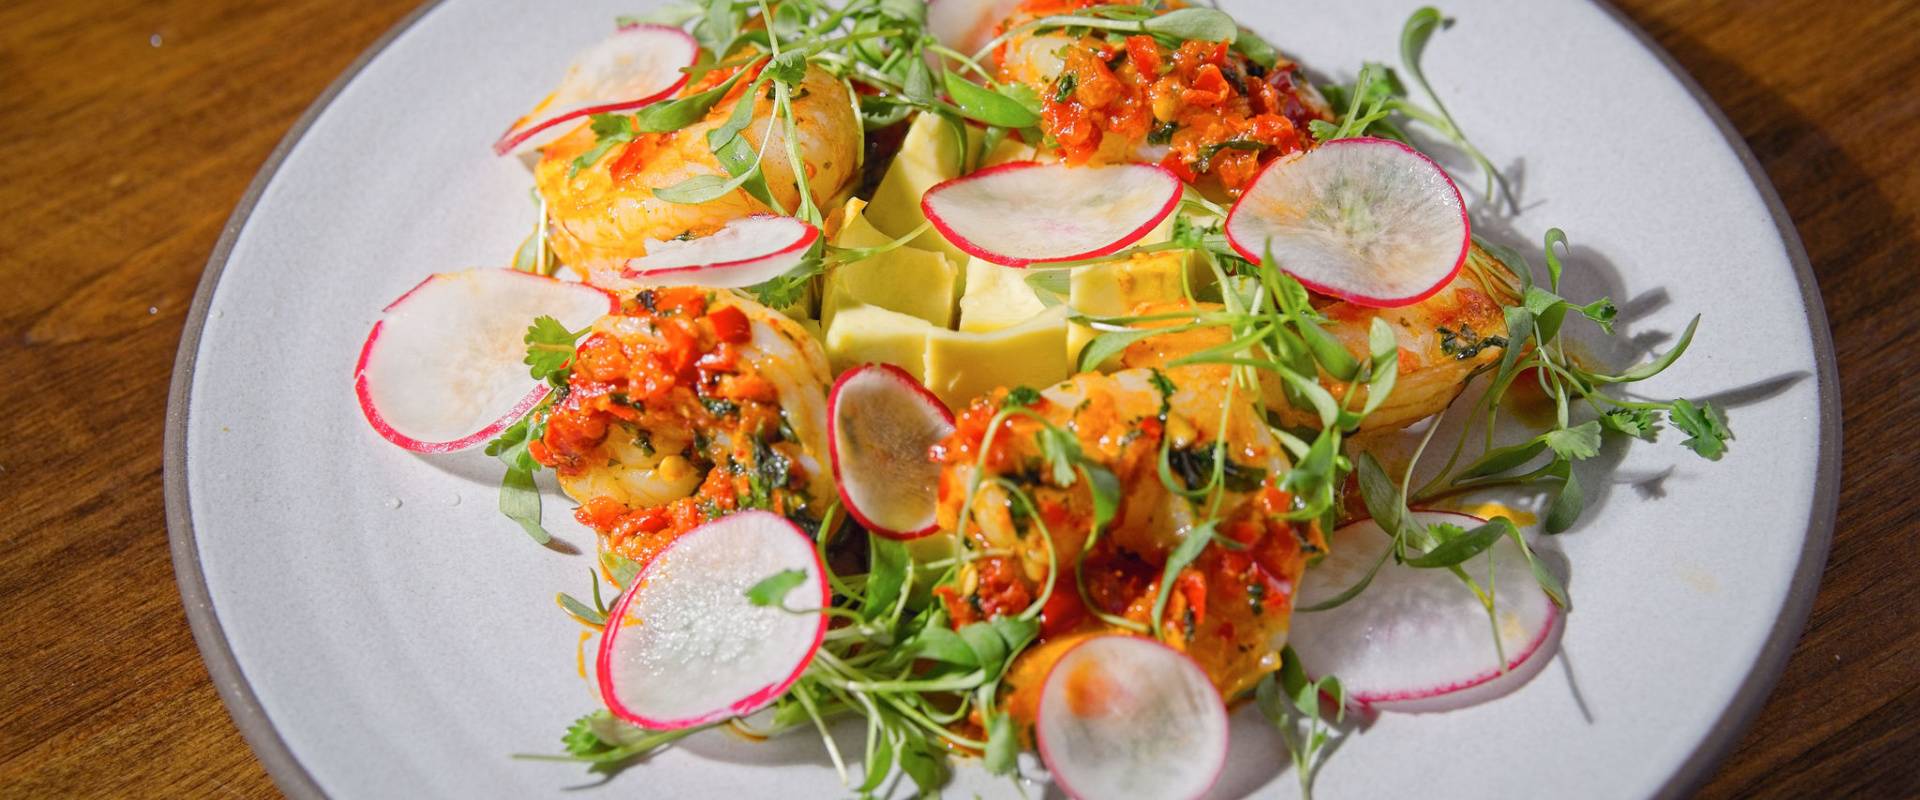 Grilled Shrimp Salad and Other Entree Salads at Red Cork Bistro